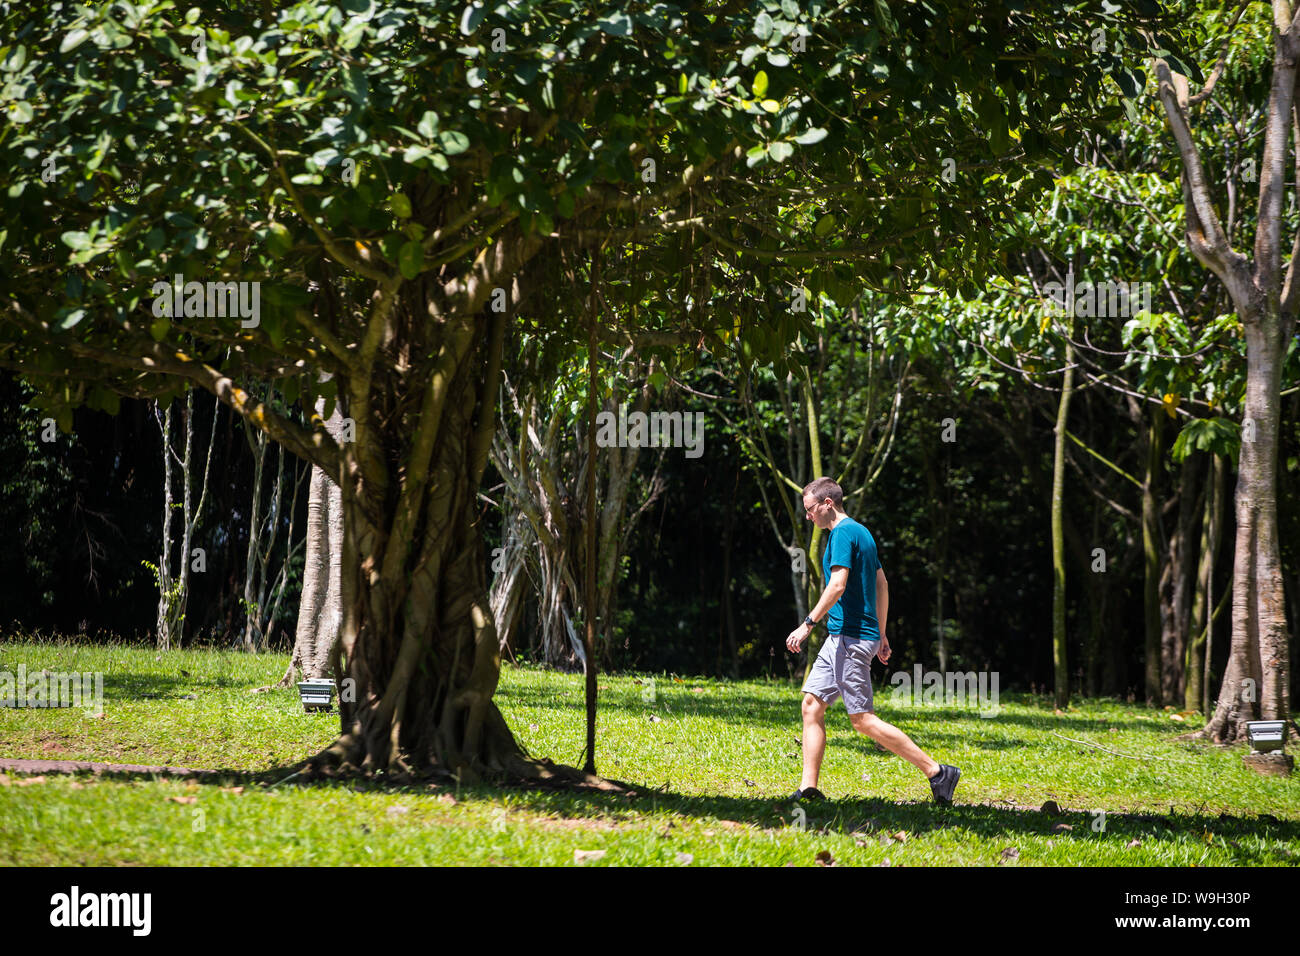 Ein Mann in blauem Hemd, der einen Spaziergang im Park macht, hilft beim Gehen Endorphine freizusetzen. Singapur. Stockfoto